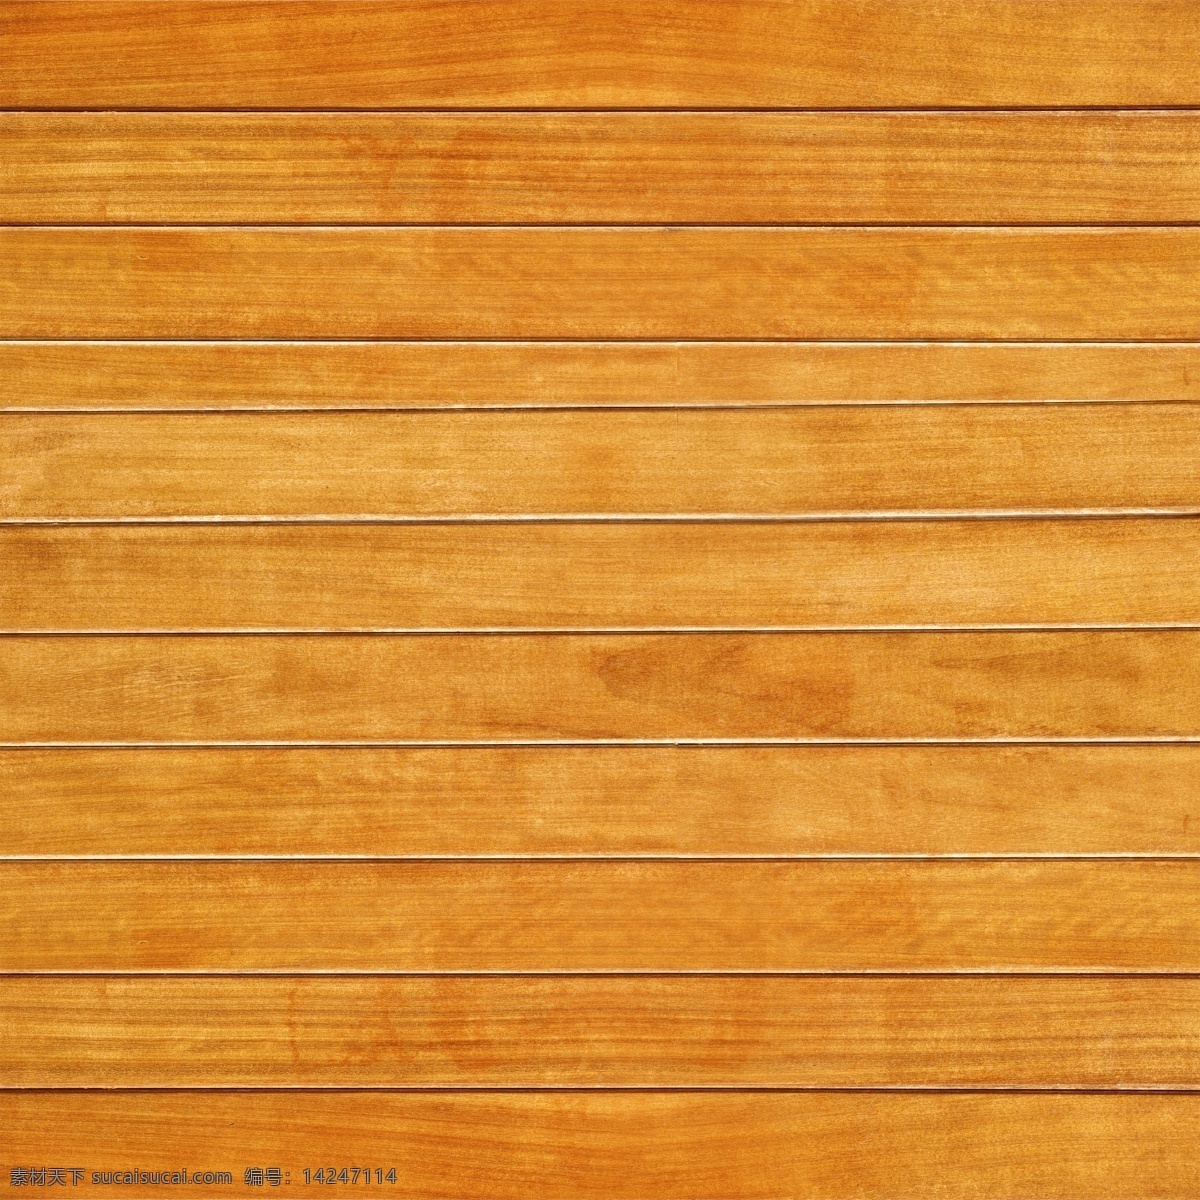 木板 木纹背景 木板背景 纹路 木质 木纹 材质 纹理 木制 高清 tiff 桌面 壁纸 拍摄 摆拍 高清摄影 木板摄影 木纹摄影 生物世界 树木树叶